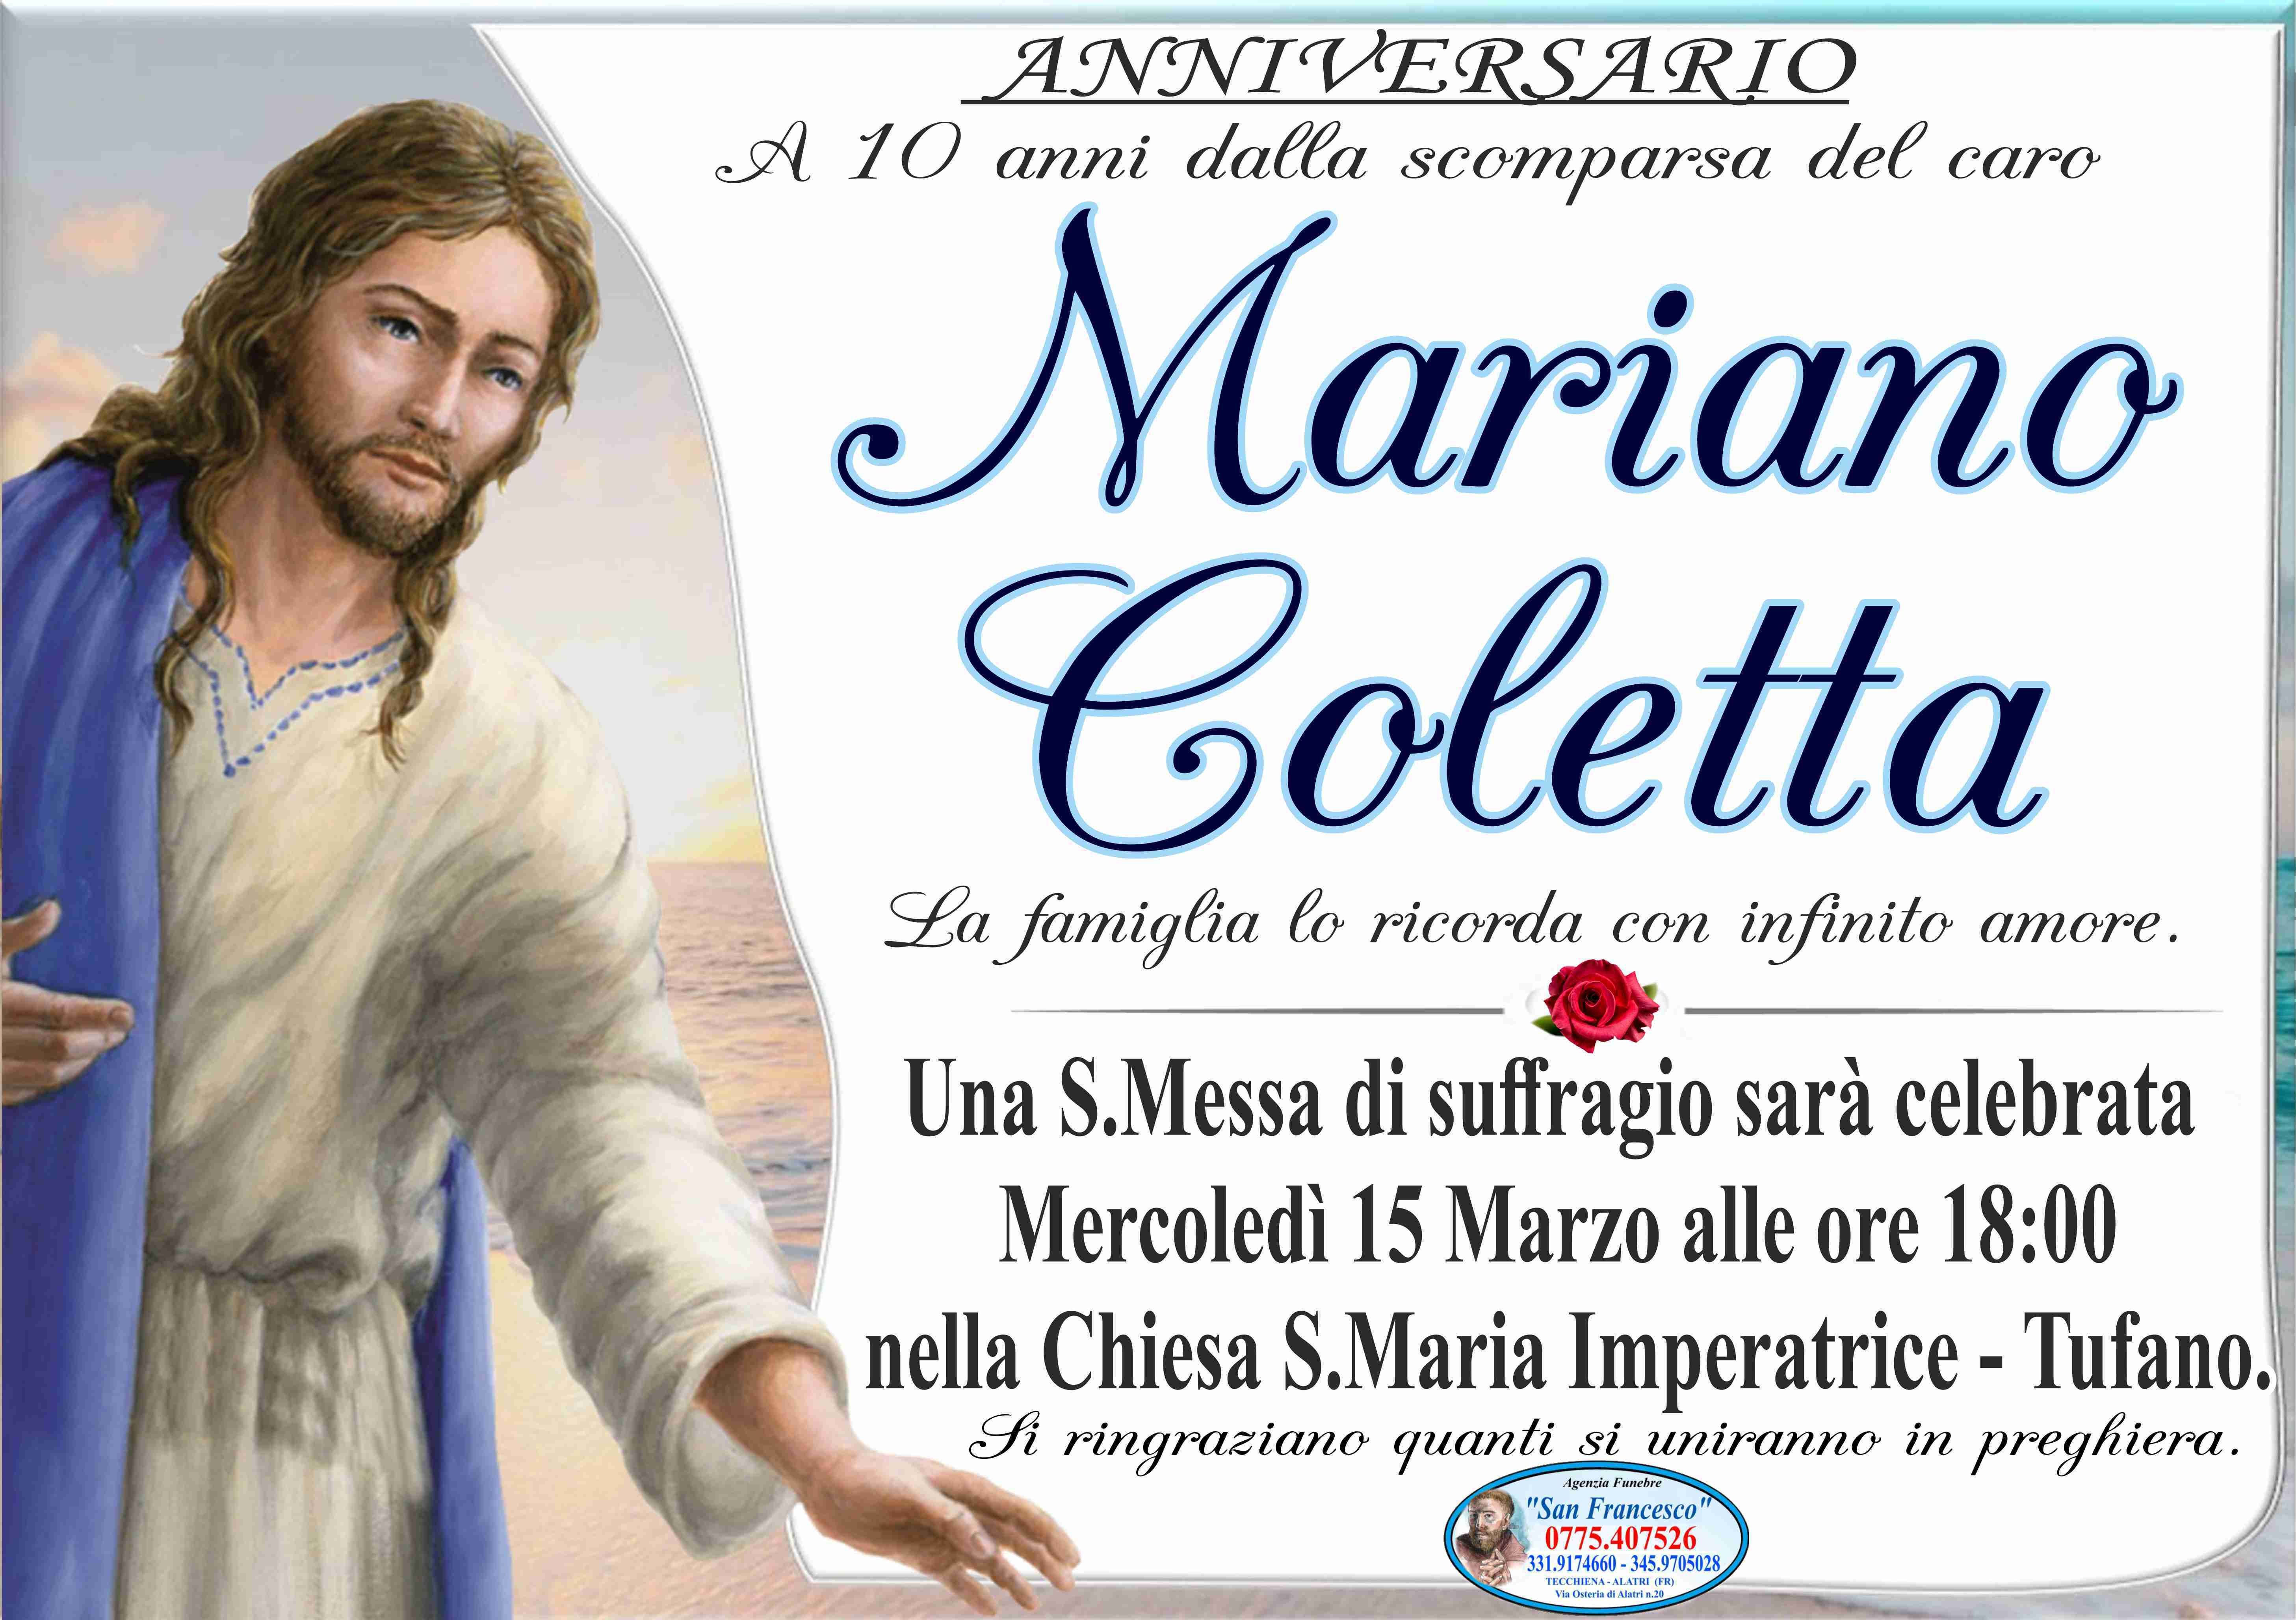 Mariano Coletta